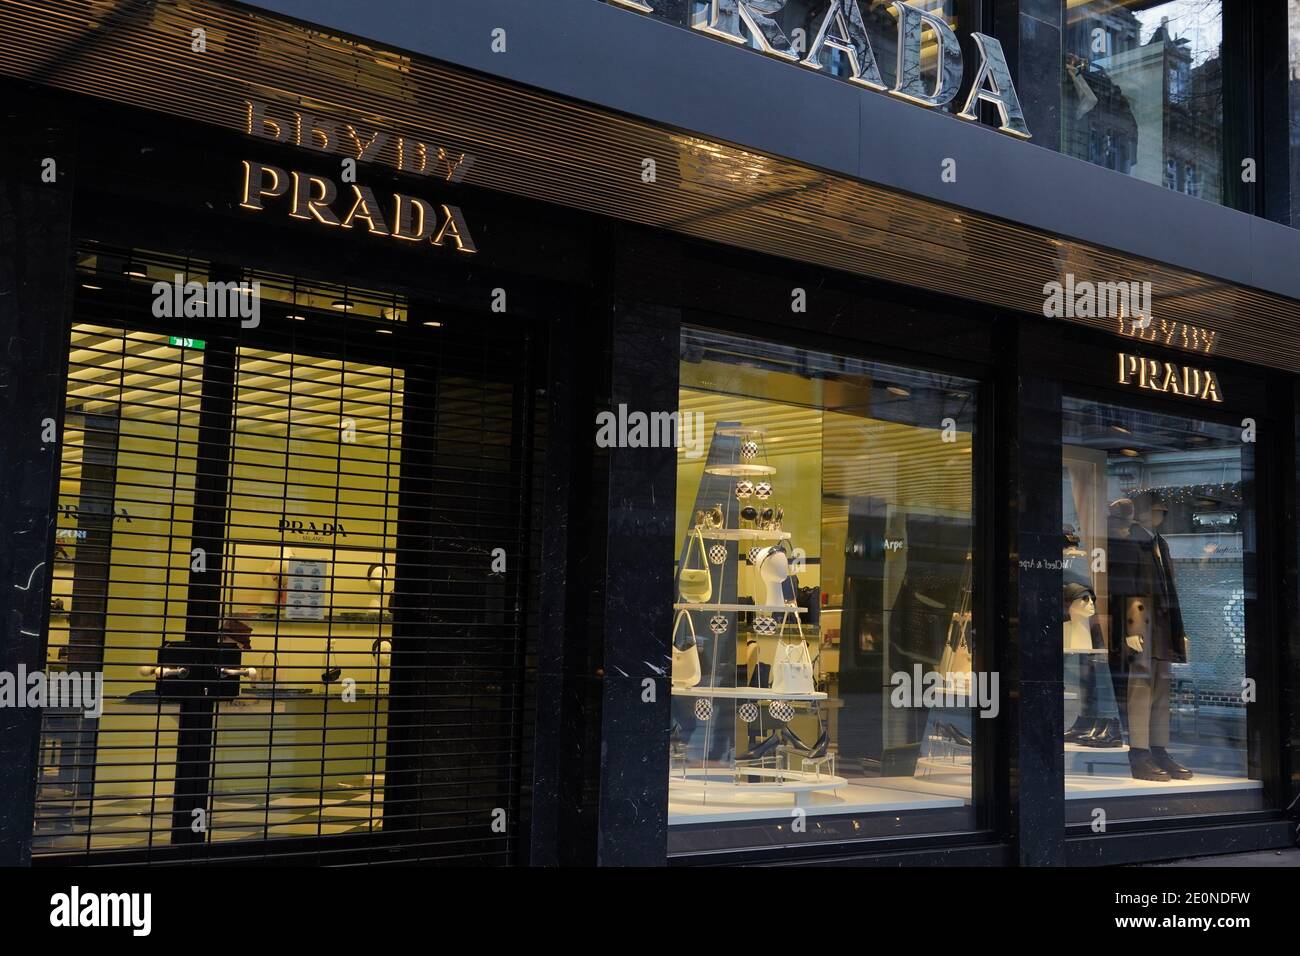 Boutique Prada a Zurigo Svizzera. Questa casa di moda italiana è famosa per le borse in pelle, gli accessori da viaggio, le scarpe, i profumi pronti all'uso. Foto Stock